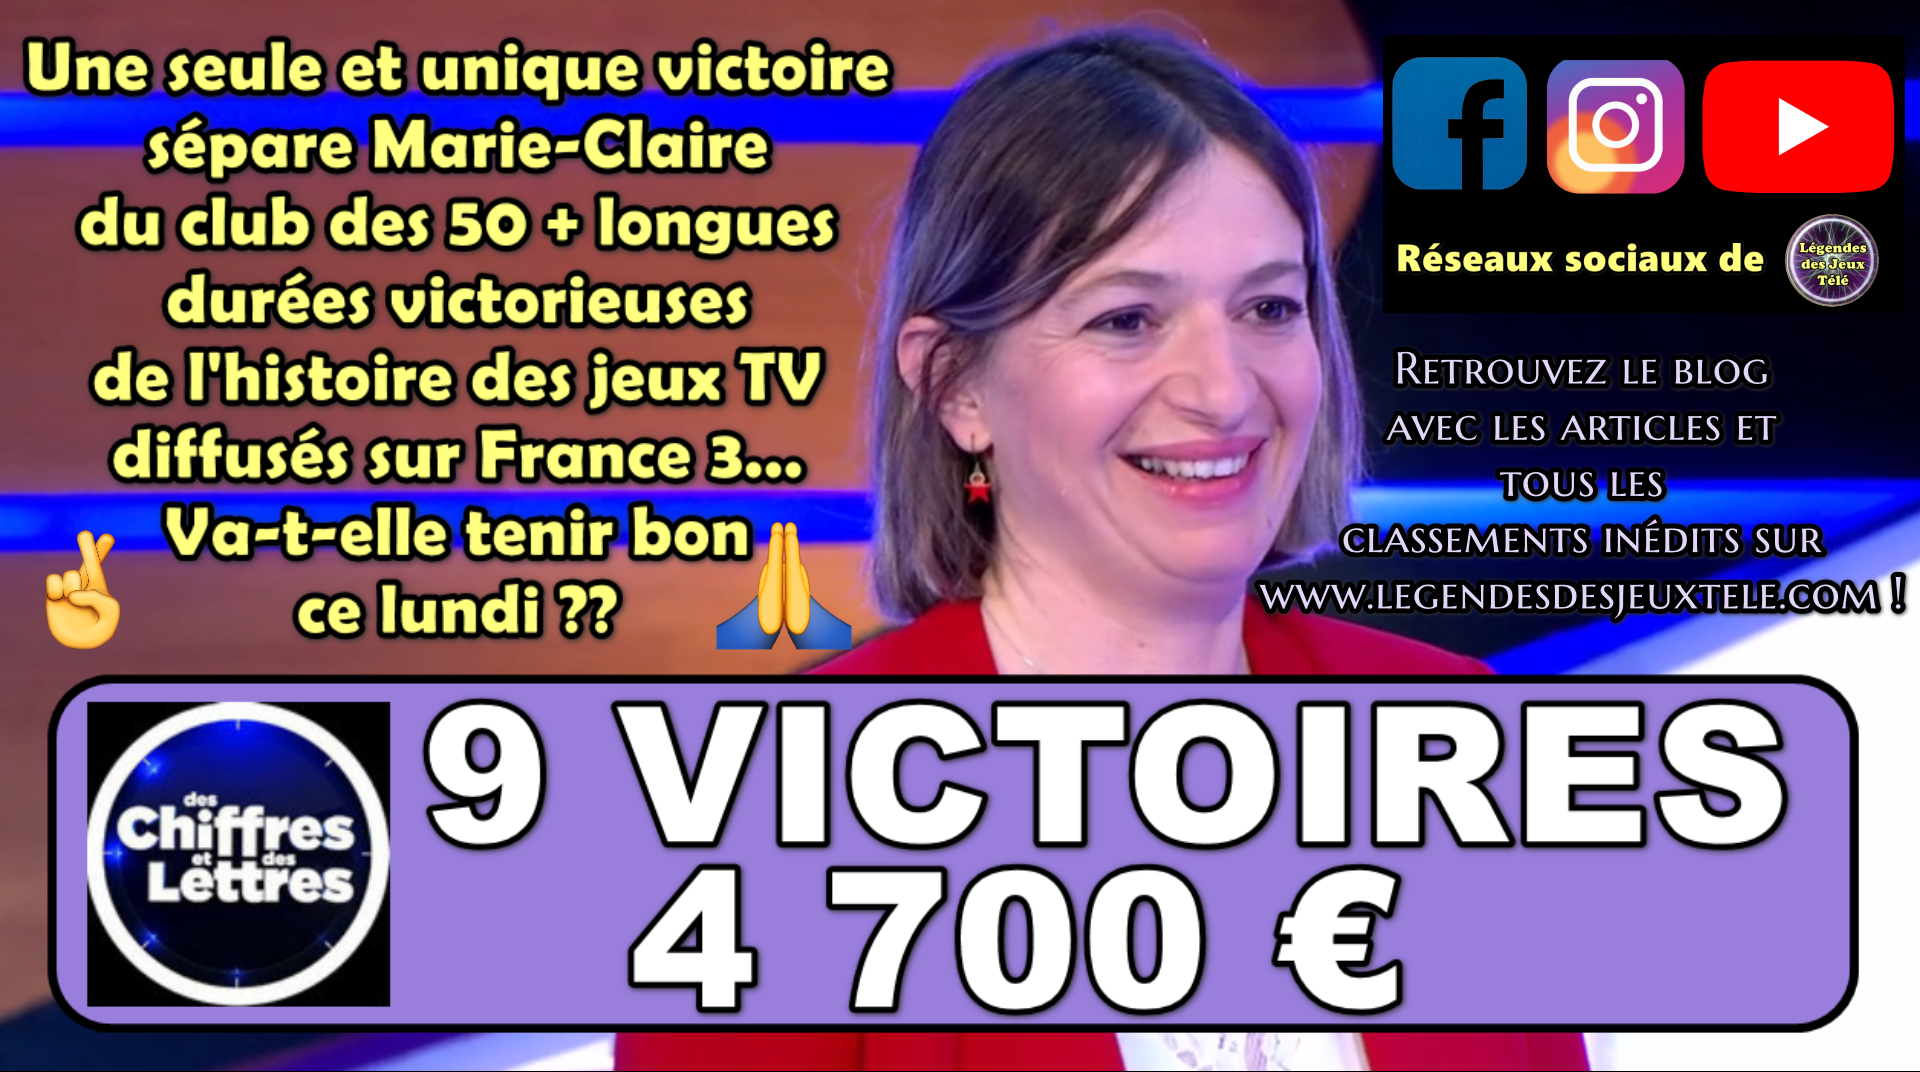 « Des chiffres et des lettres » : Marie-Claire va-t-elle marquer une 10ème victoire et rentrer dans l’histoire des jeux TV diffusés sur France 3 ?